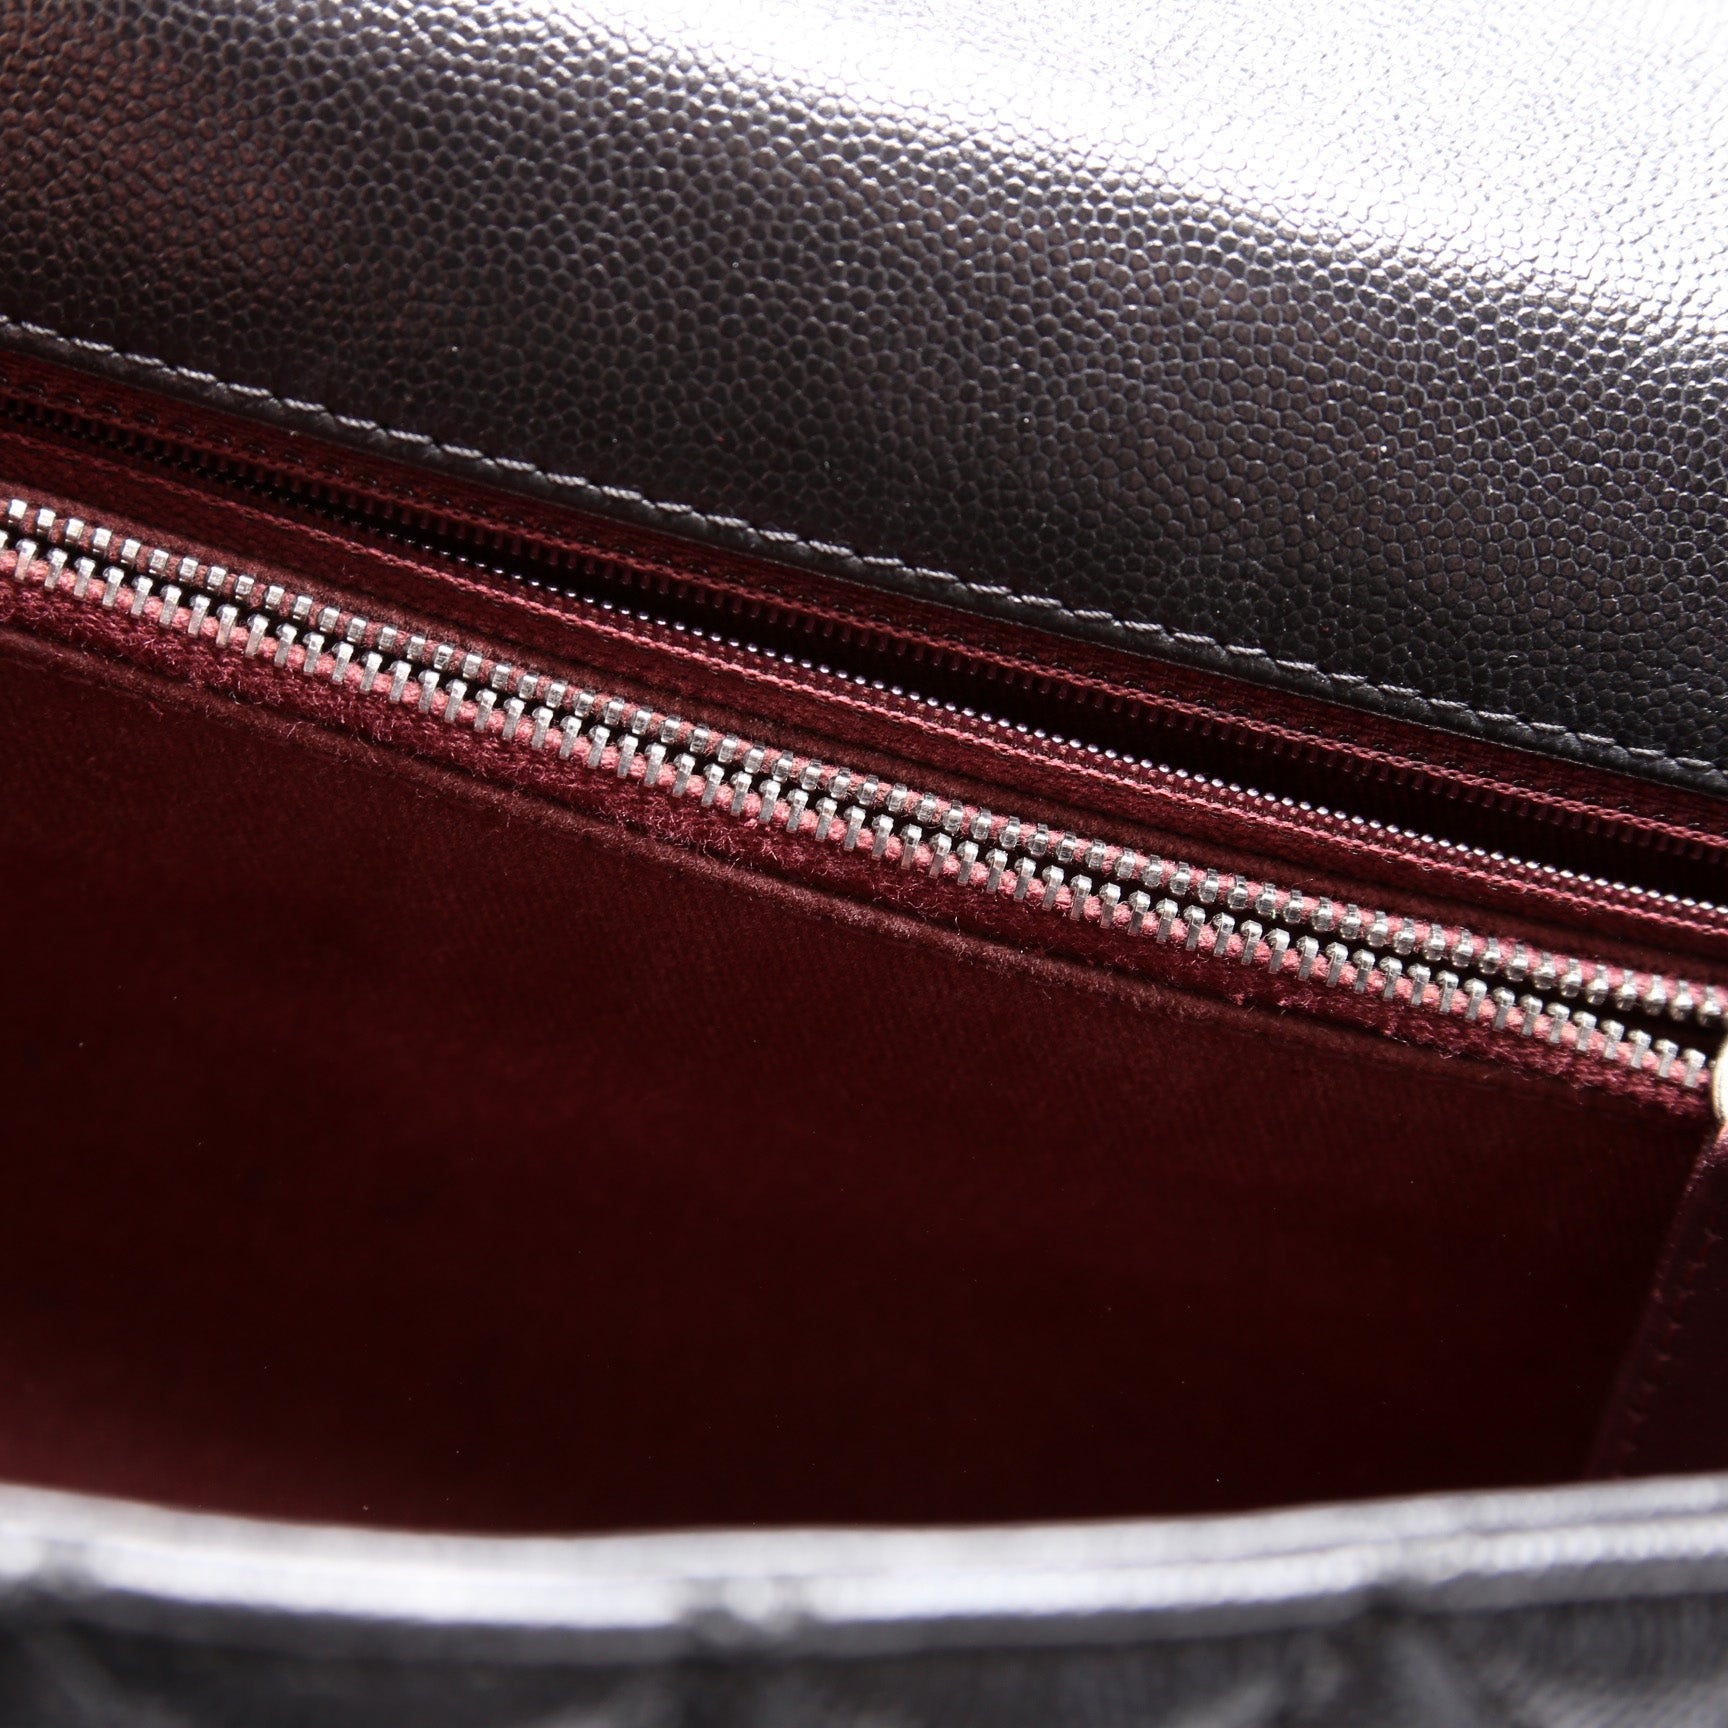 Coco Top Handle Medium 22M – Keeks Designer Handbags